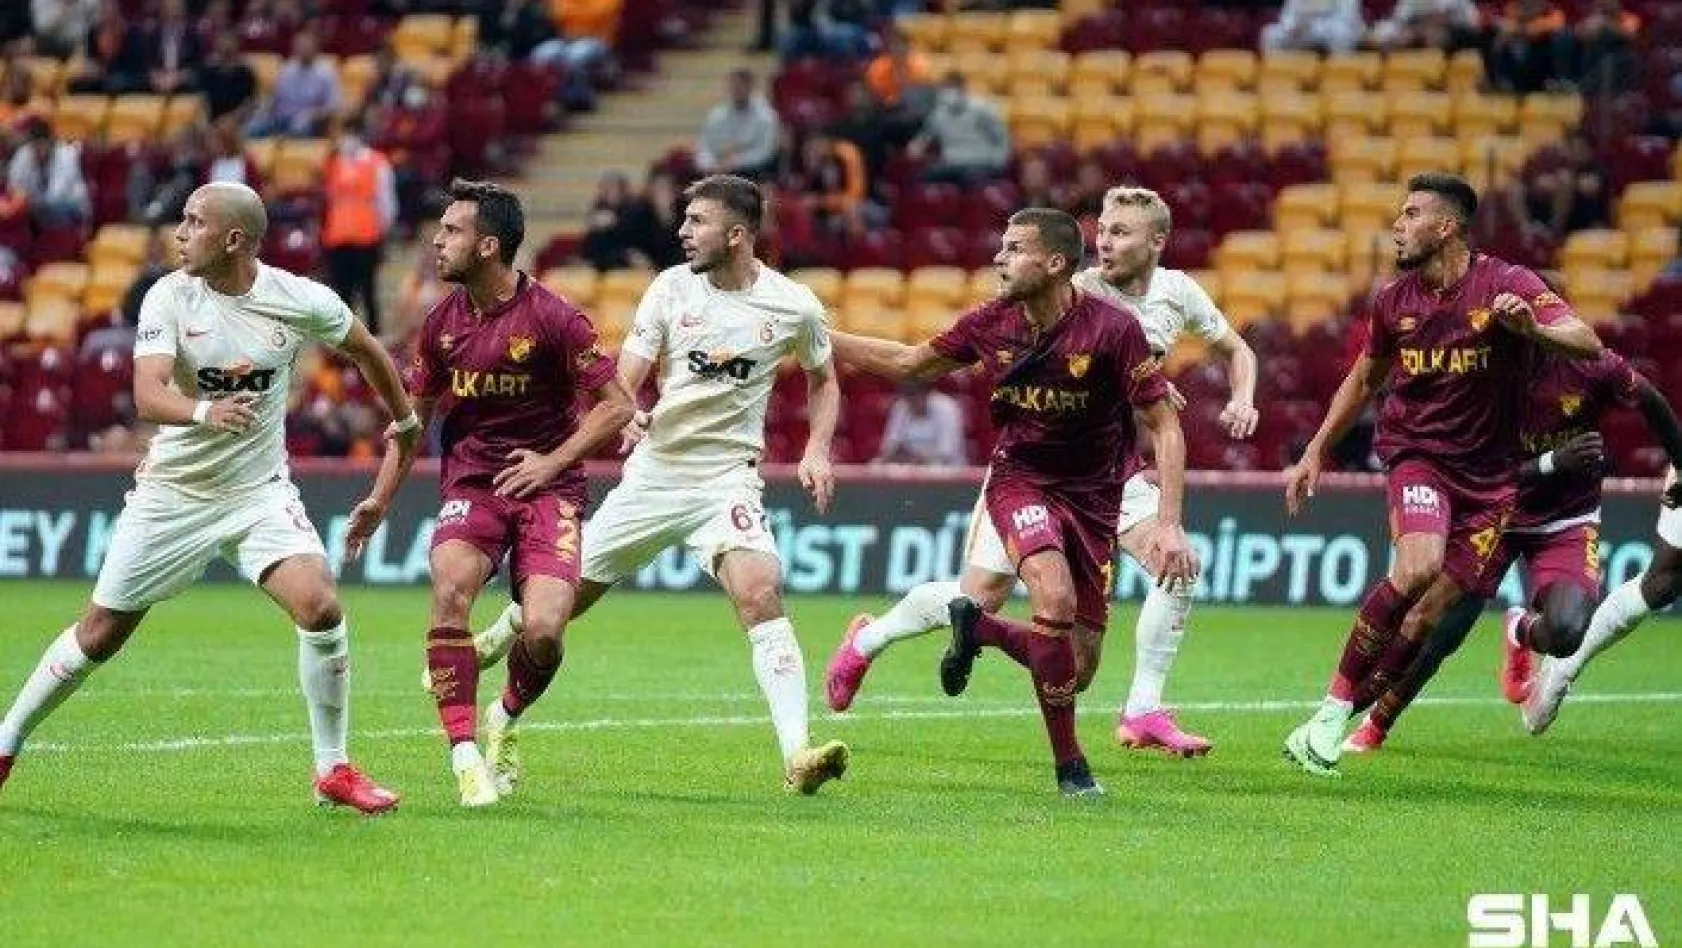 Süper Lig: Galatasaray: 0 - Göztepe: 1 (İlk yarı)